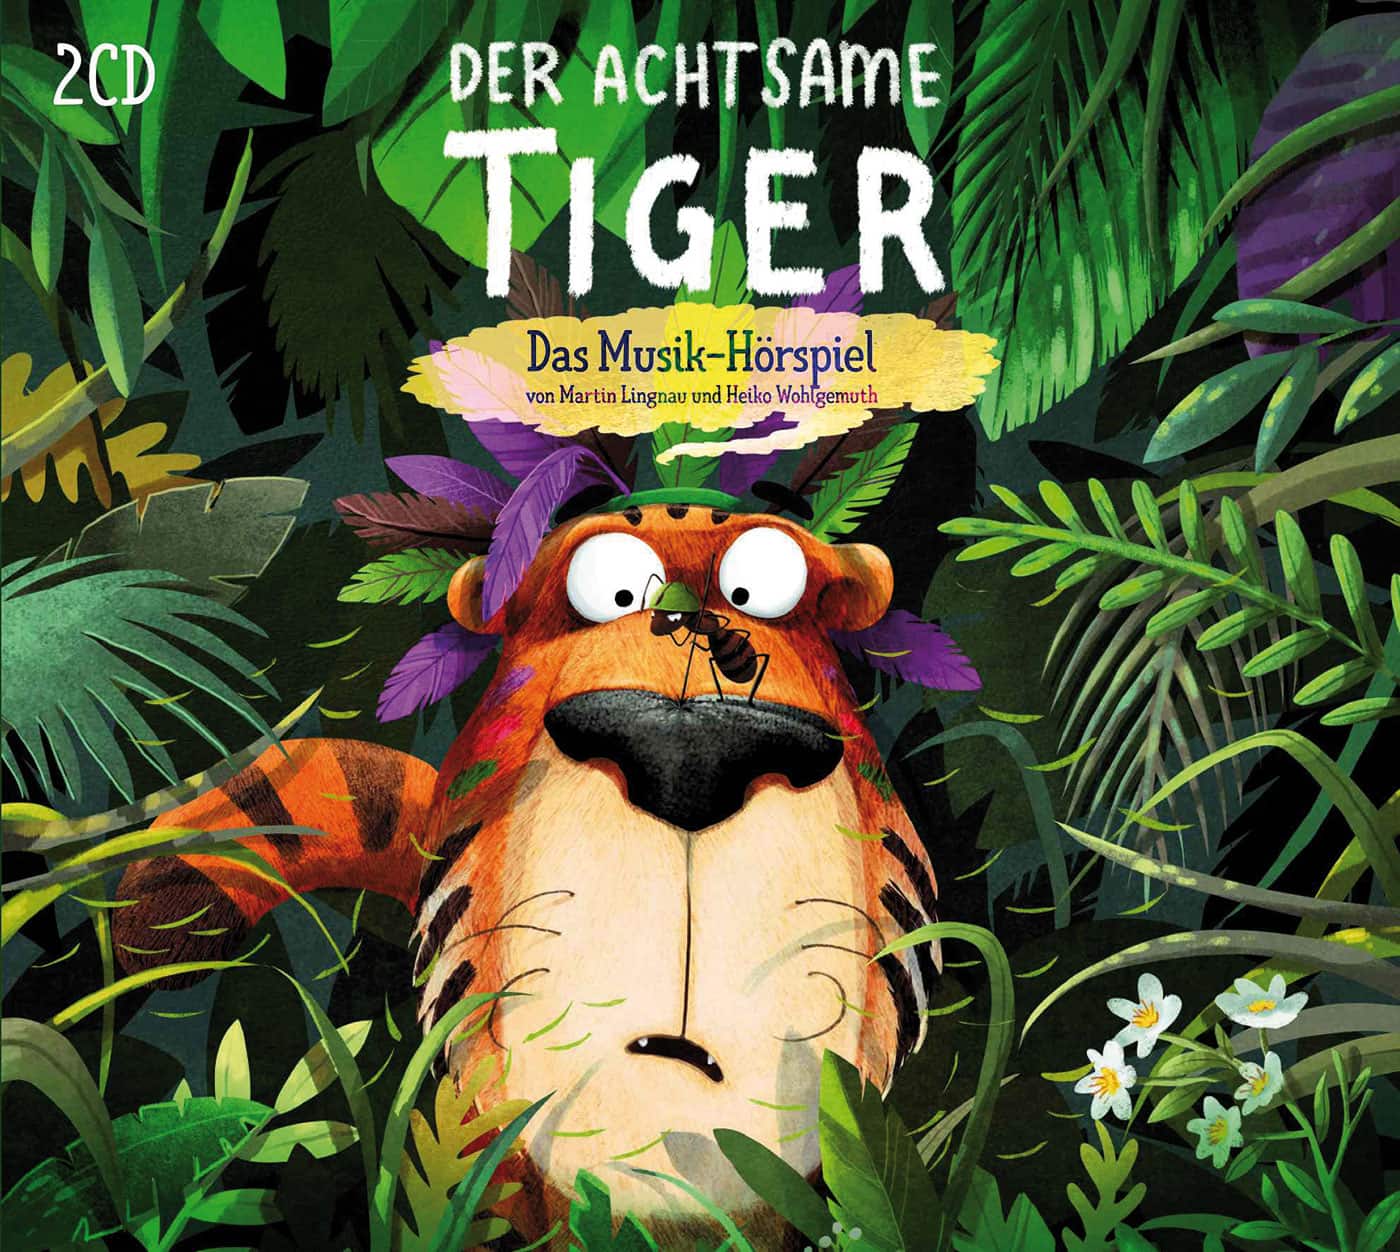 Hörspiel-Tipp für Kinder: Der achtsame Tiger // HIMBEER